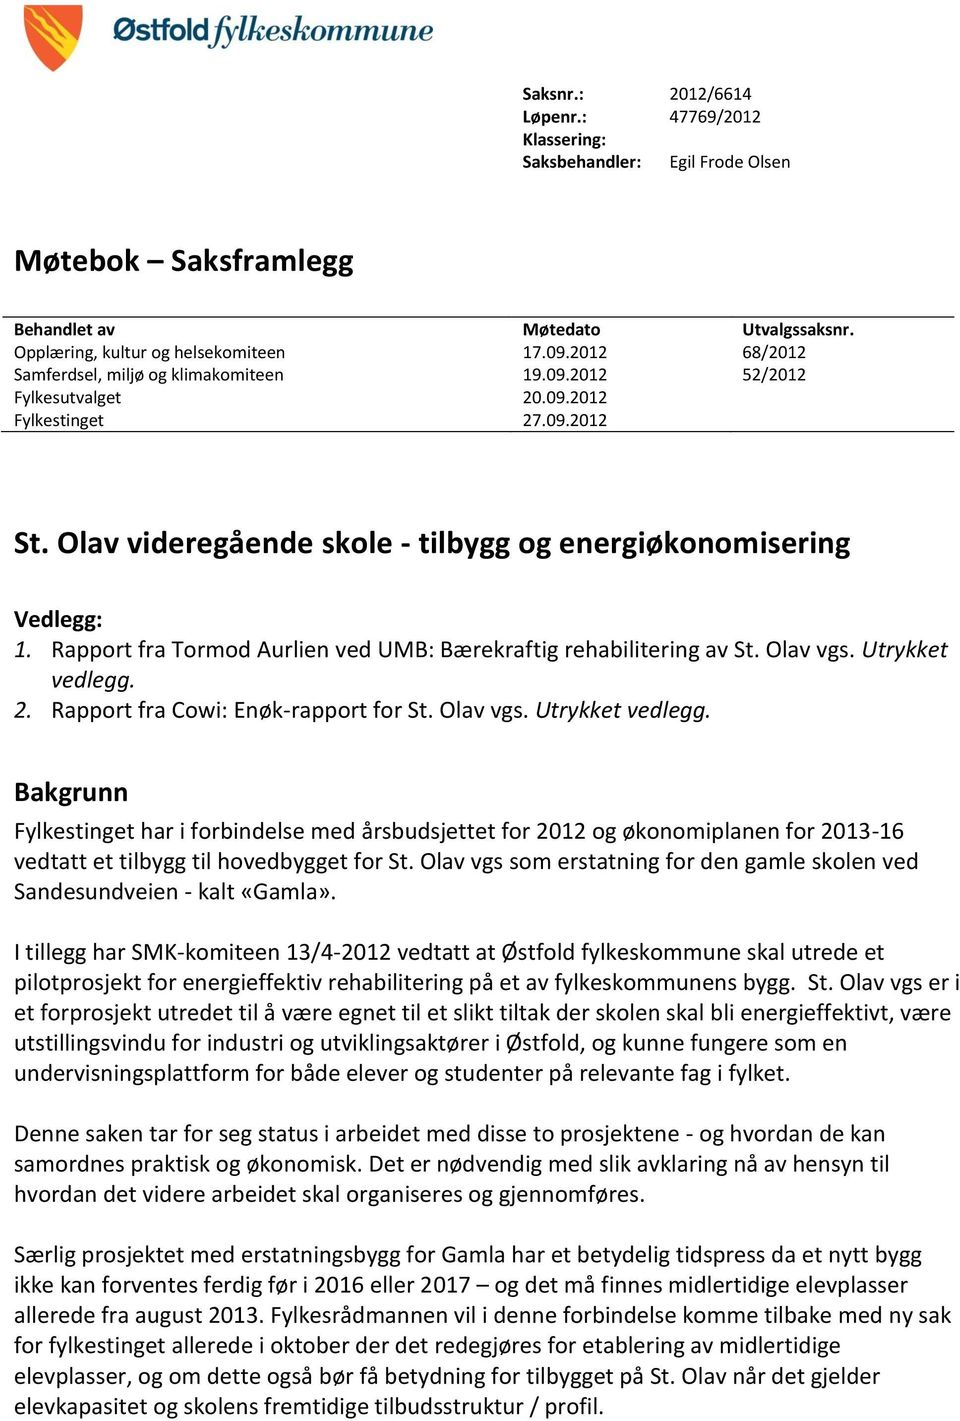 Rapport fra Tormod Aurlien ved UMB: Bærekraftig rehabilitering av St. Olav vgs. Utrykket vedlegg.